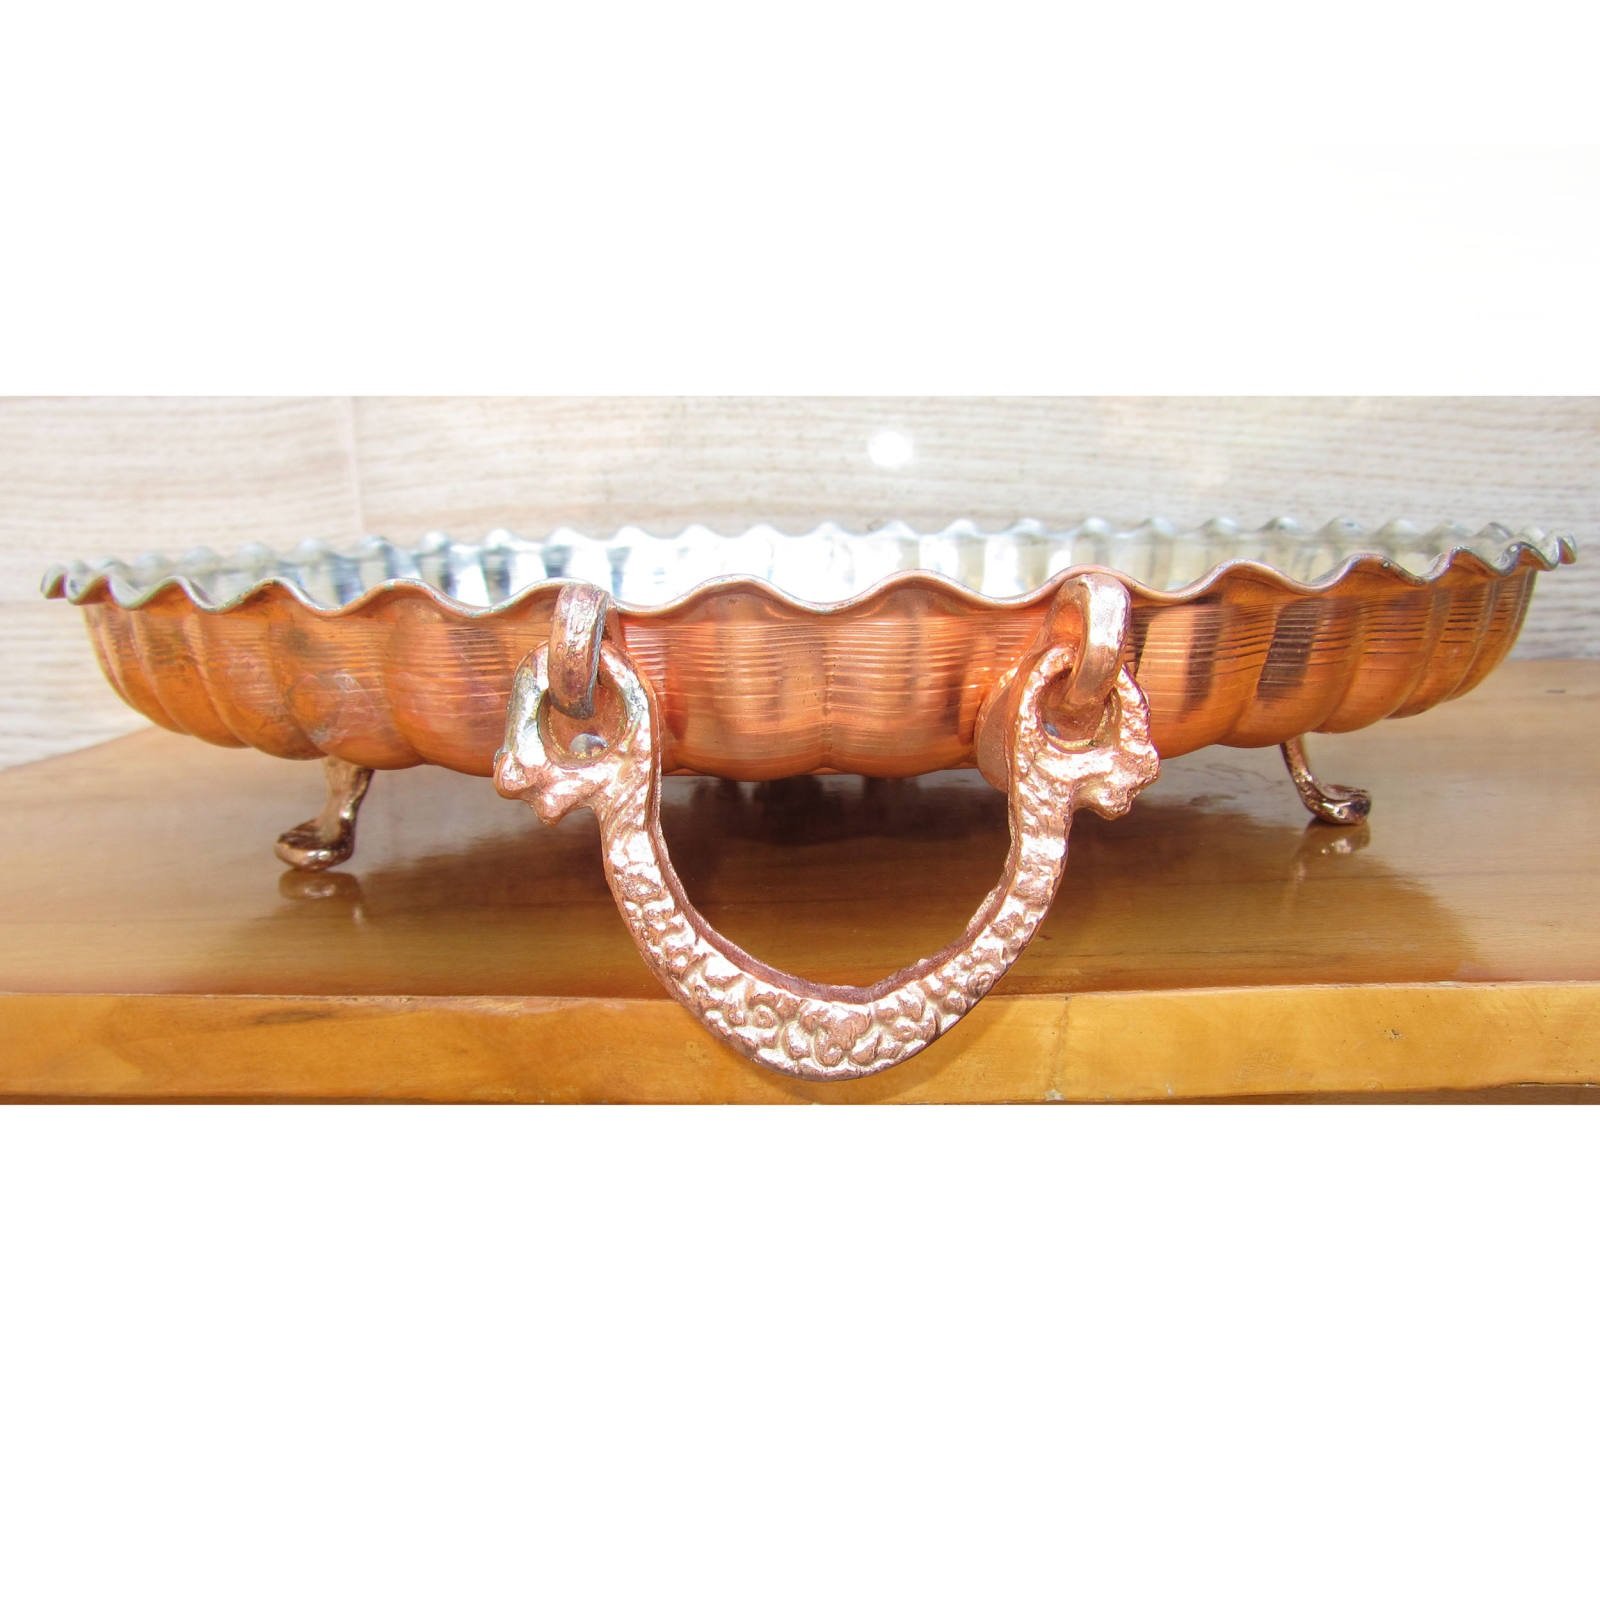 Handicraft Copper tray model 3payeh code SMSP03, prìs obair copair, prìs dèante le copar, bathar copair persian